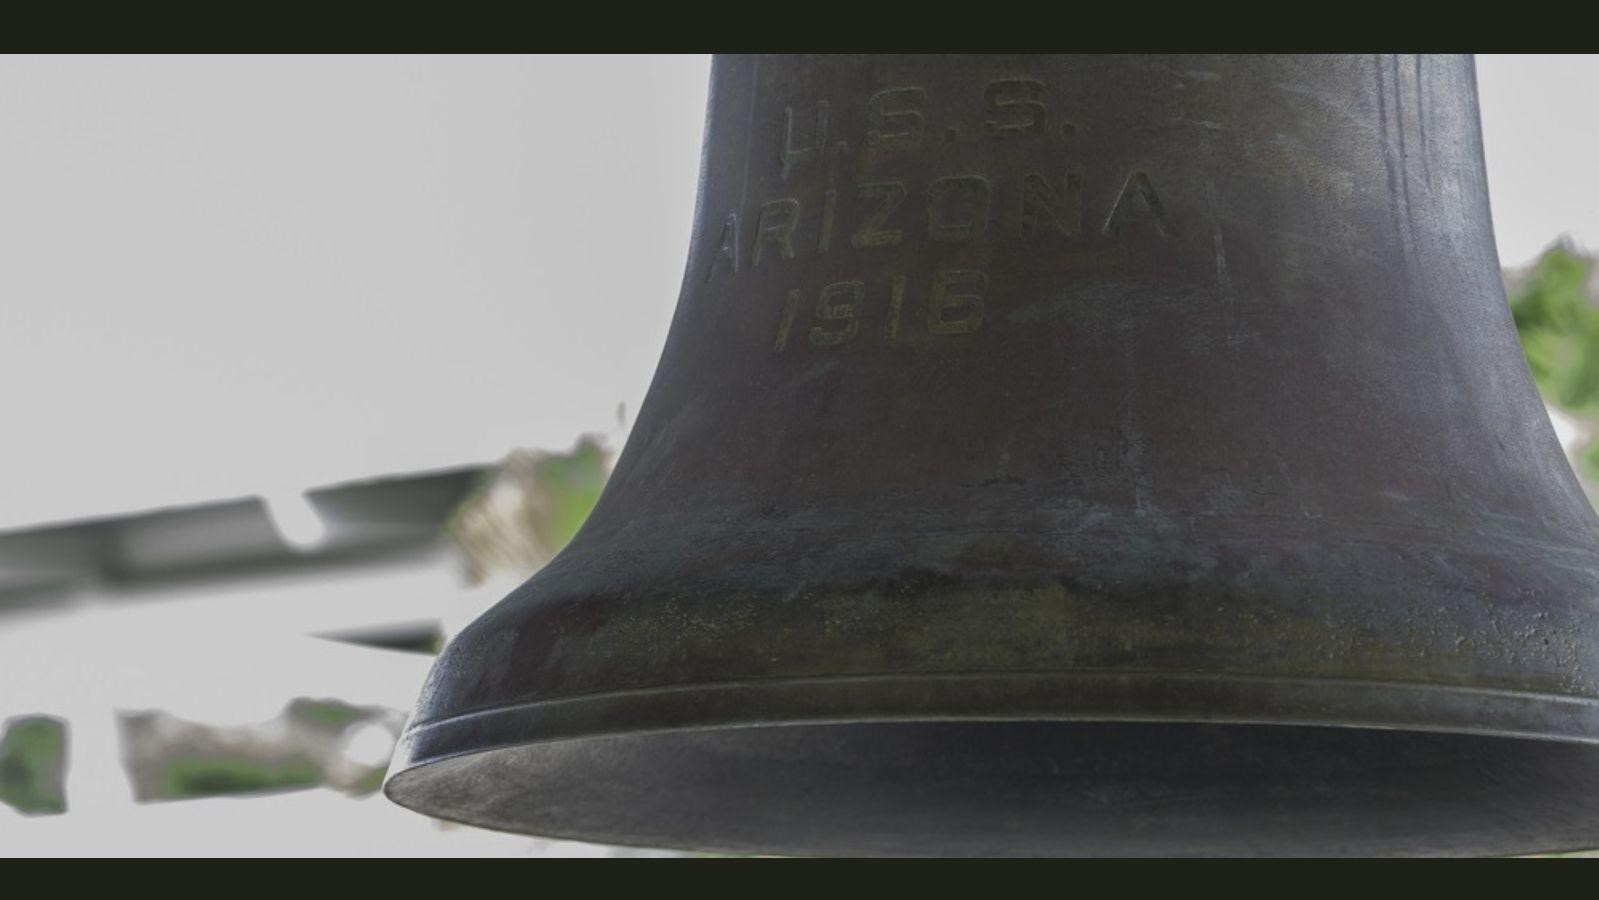 The USS Arizona Memorial Bell hangs at the Pearl Harbor National Memorial Visitor Center